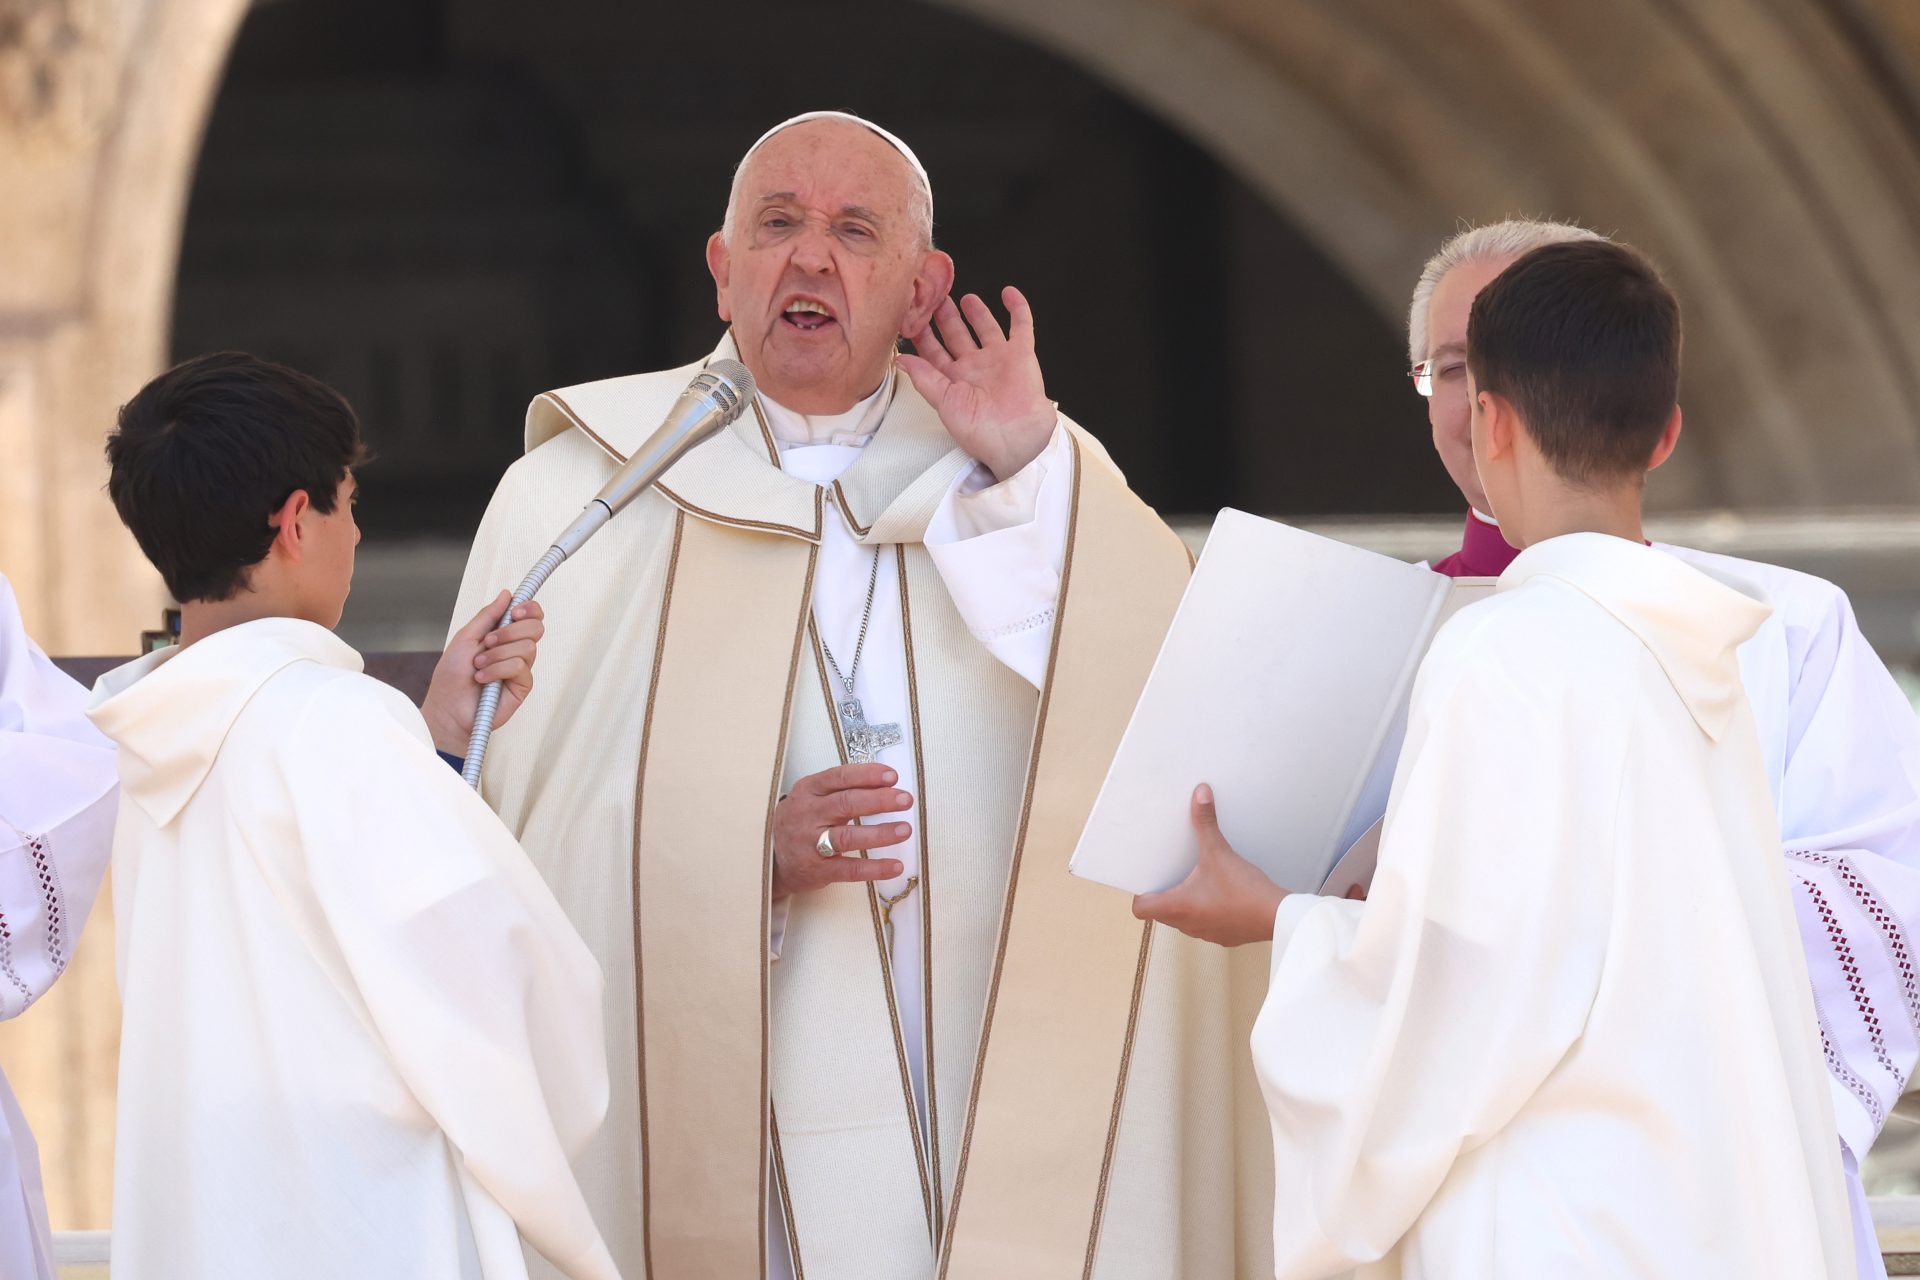 カトリック教会のフランシスコ教皇、同性愛差別的な単語を使用したことを認めて謝罪